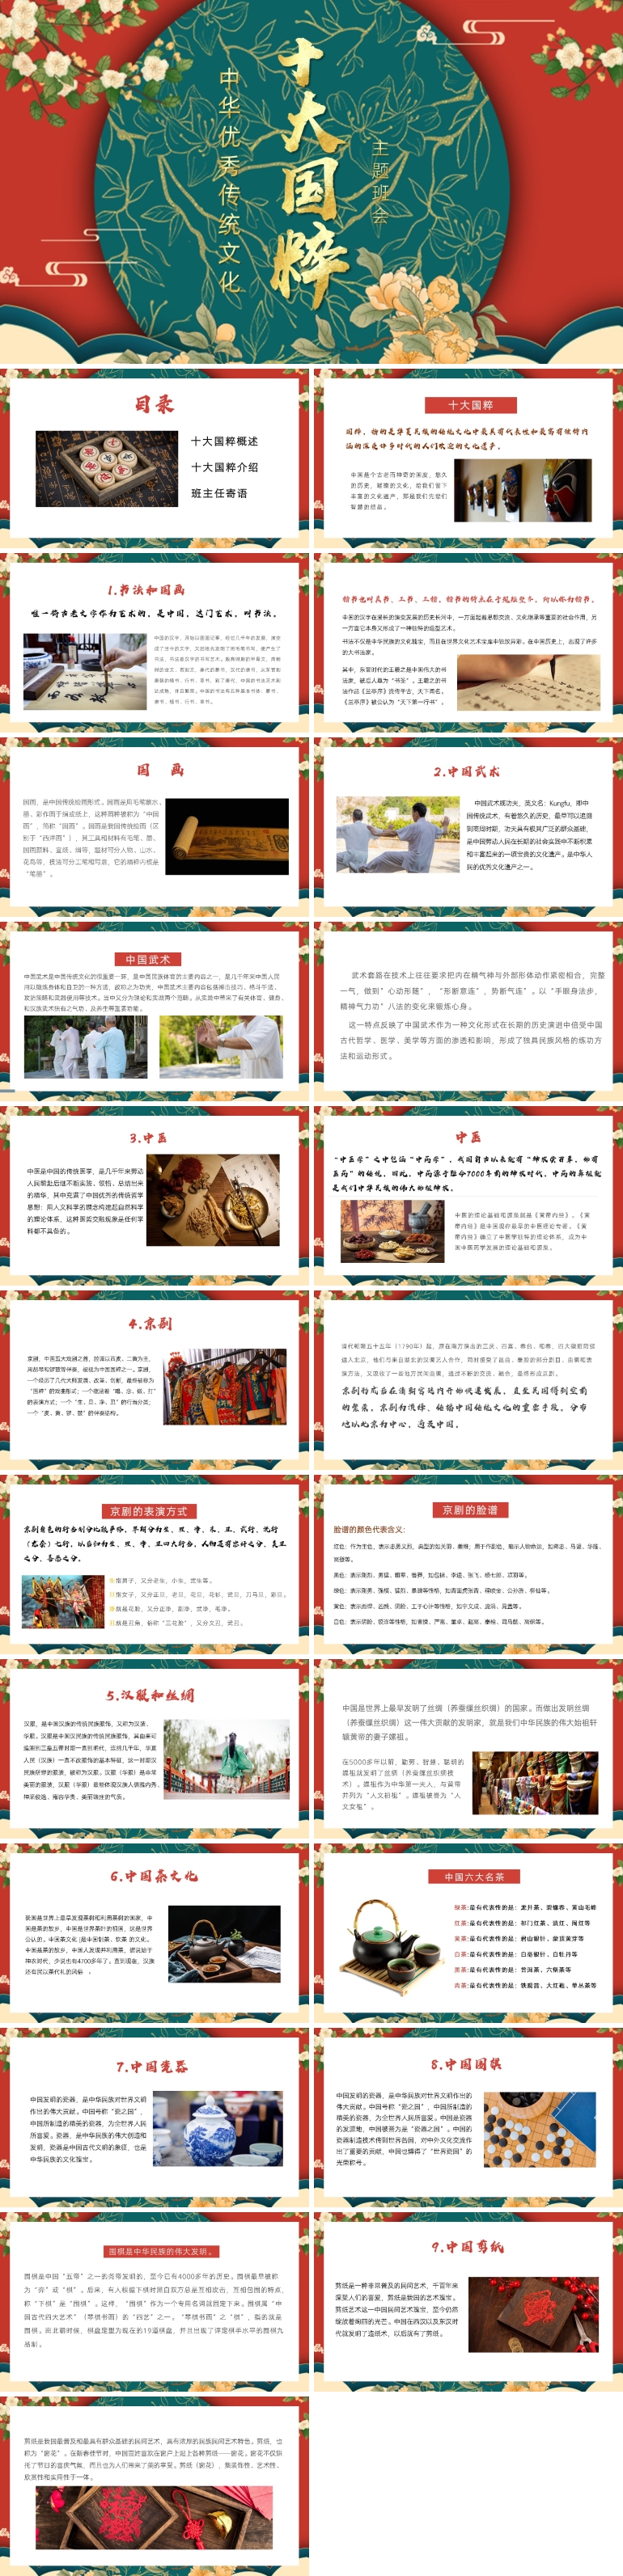 中国优秀传统文化十大国粹介绍PPT课件